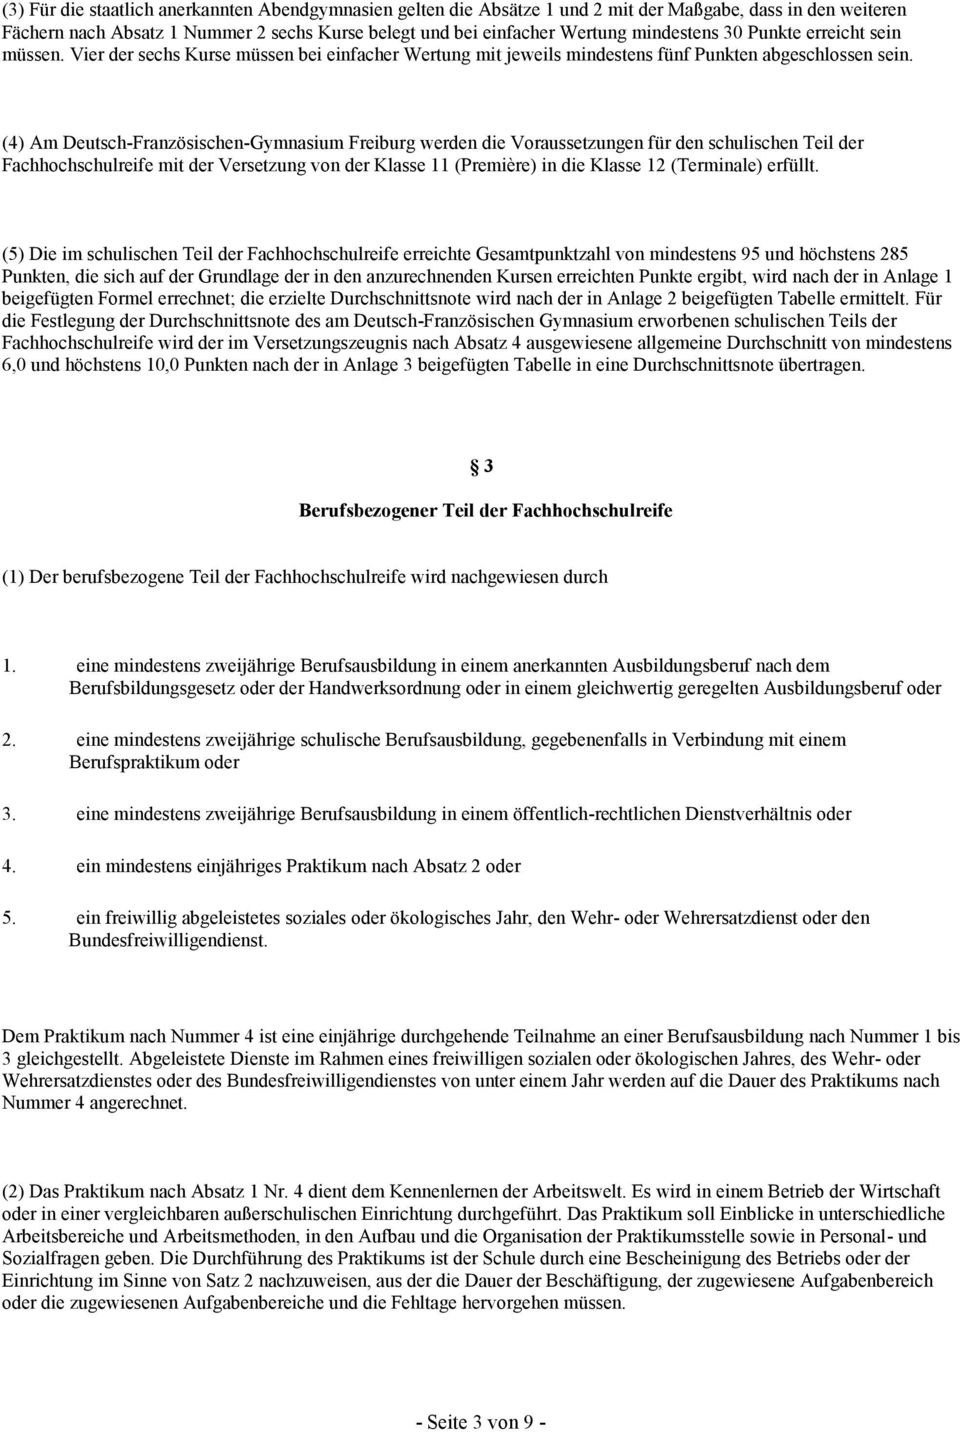 (4) Am Deutsch-Französischen-Gymnasium Freiburg werden die Voraussetzungen für den schulischen Teil der Fachhochschulreife mit der Versetzung von der Klasse 11 (Première) in die Klasse 12 (Terminale)